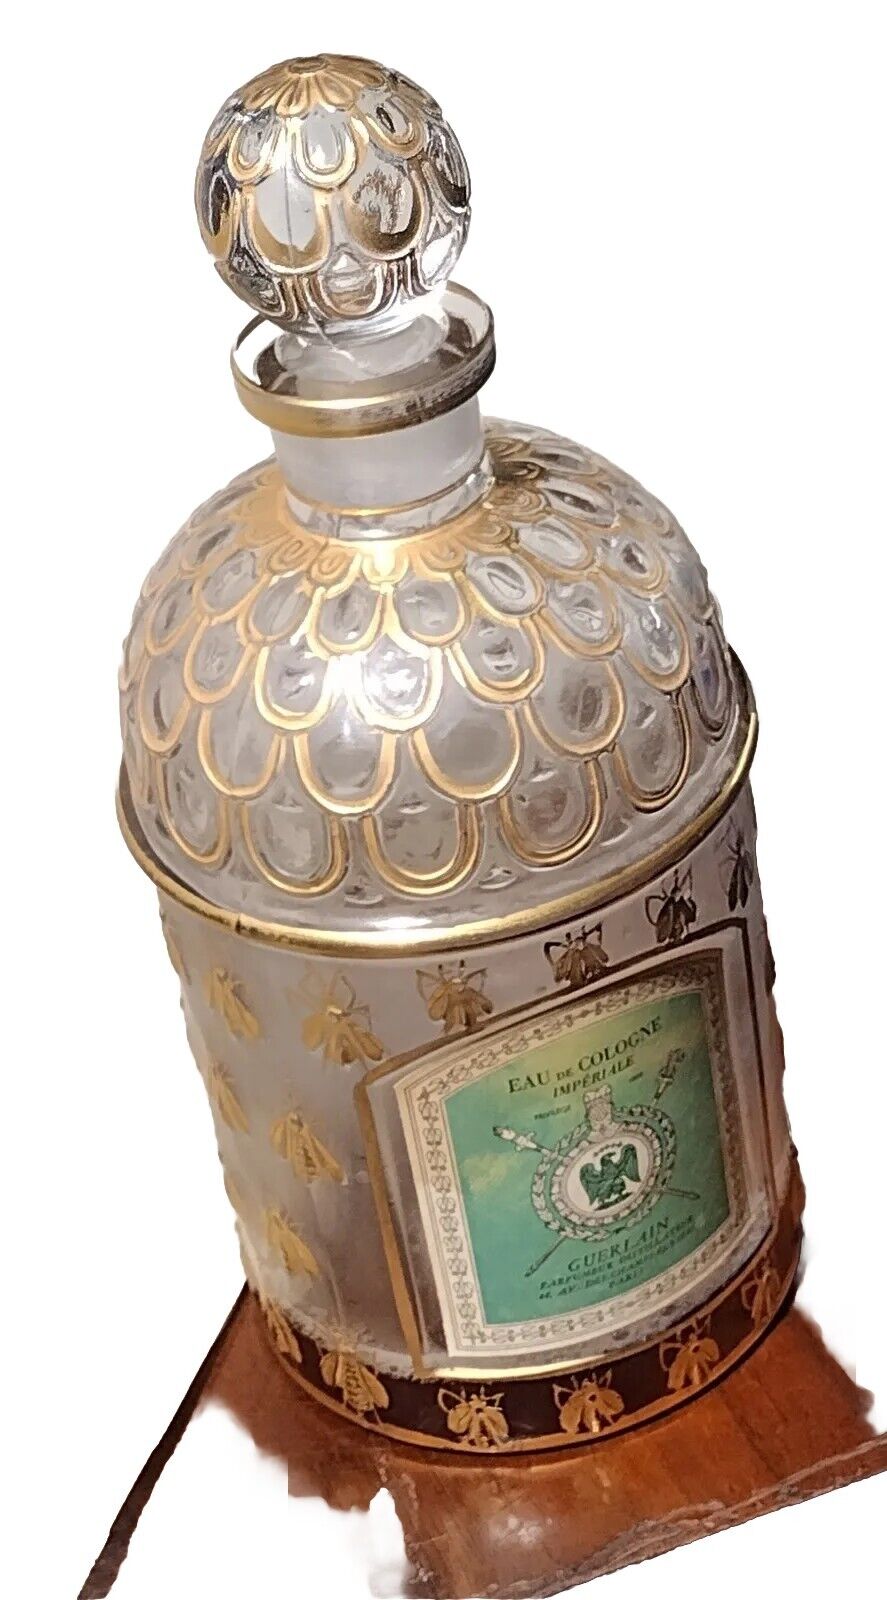 Guerlain Imperiale 24kt Gold Bees Eau De Cologne 34oz Bottle Extremely Rare 